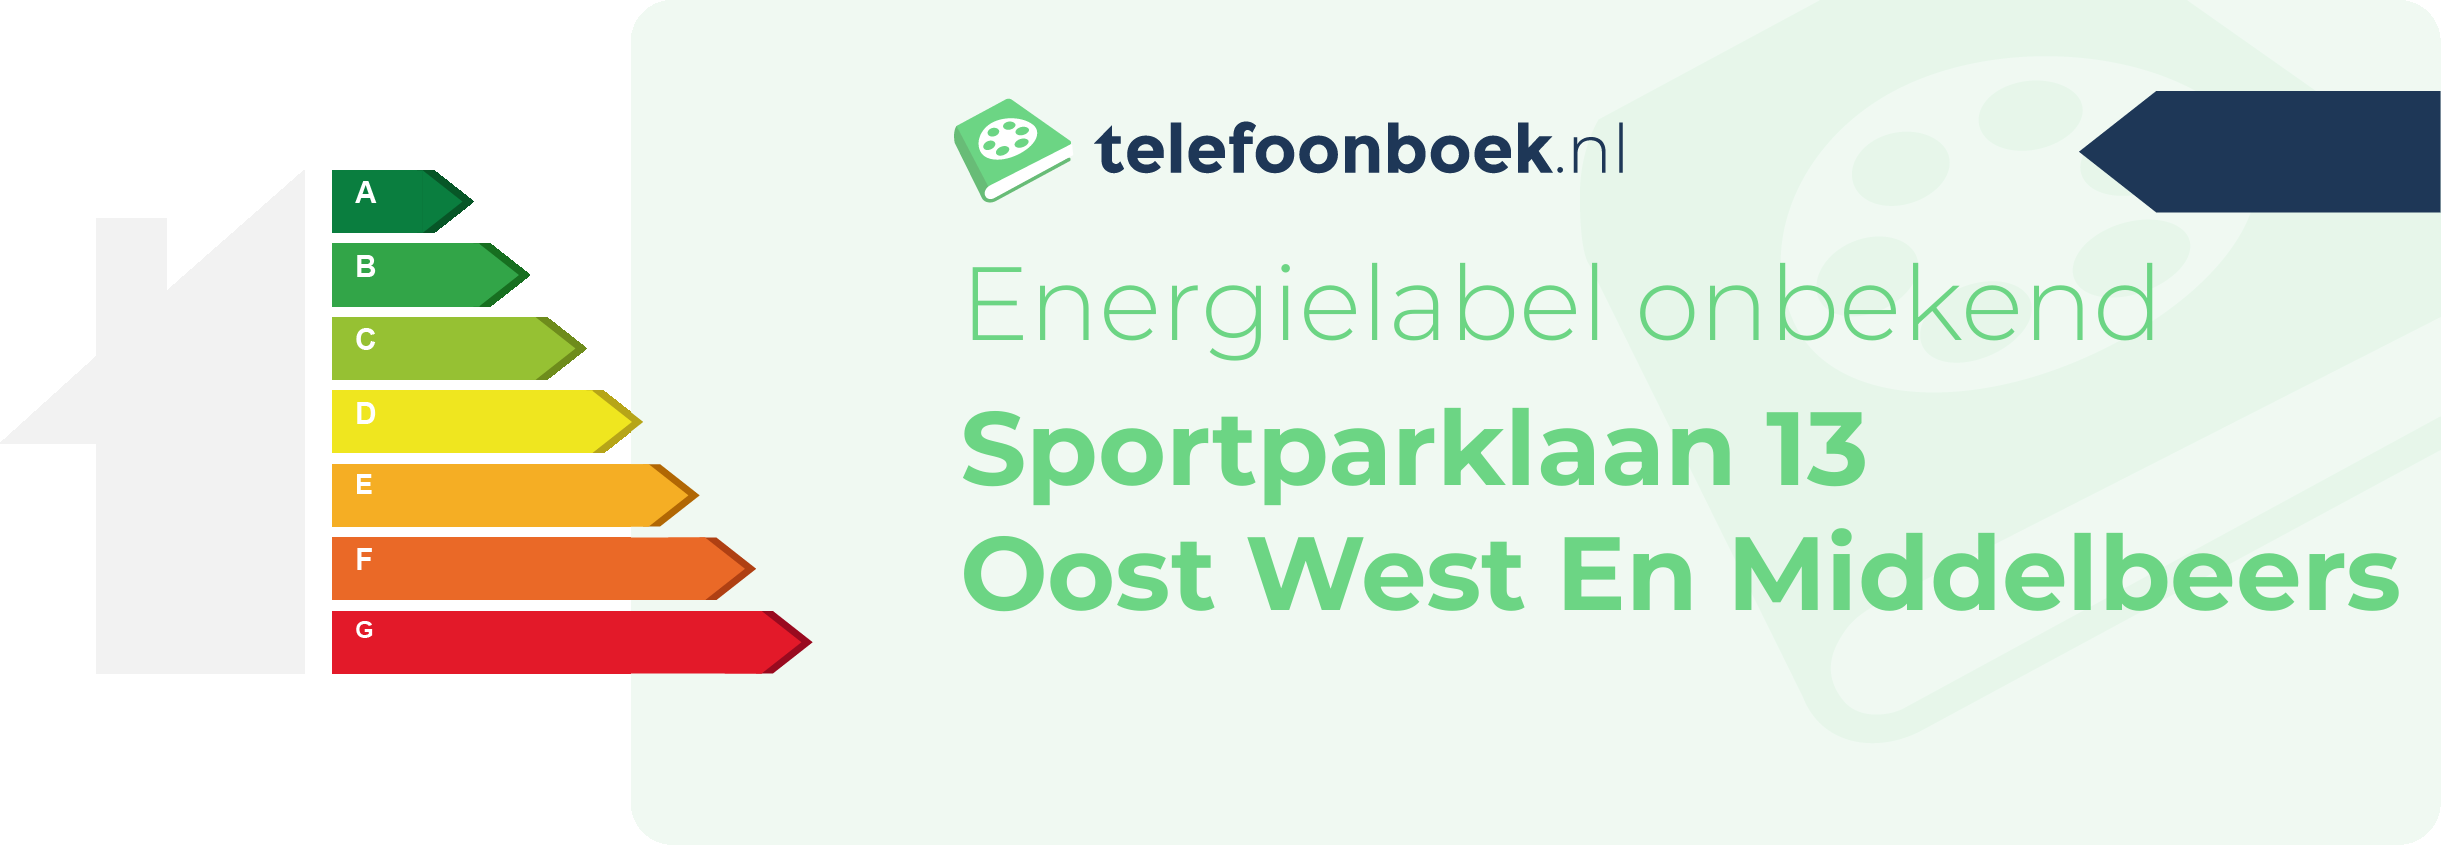 Energielabel Sportparklaan 13 Oost West En Middelbeers